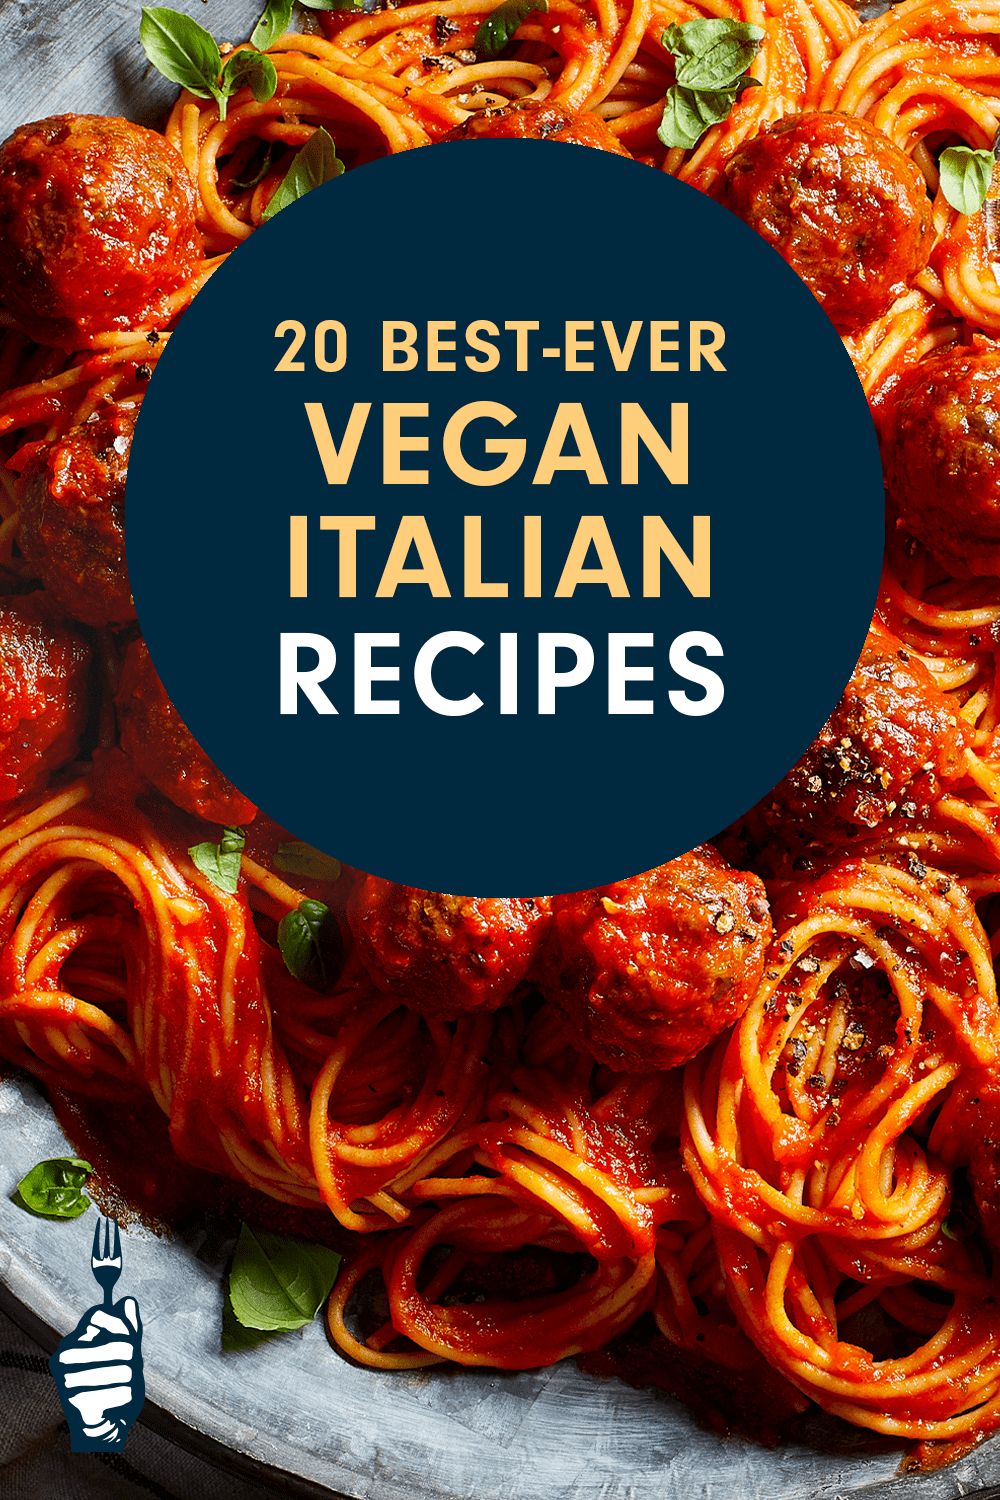 20 Best-Ever Vegan Italian Recipes - Forks Over Knives